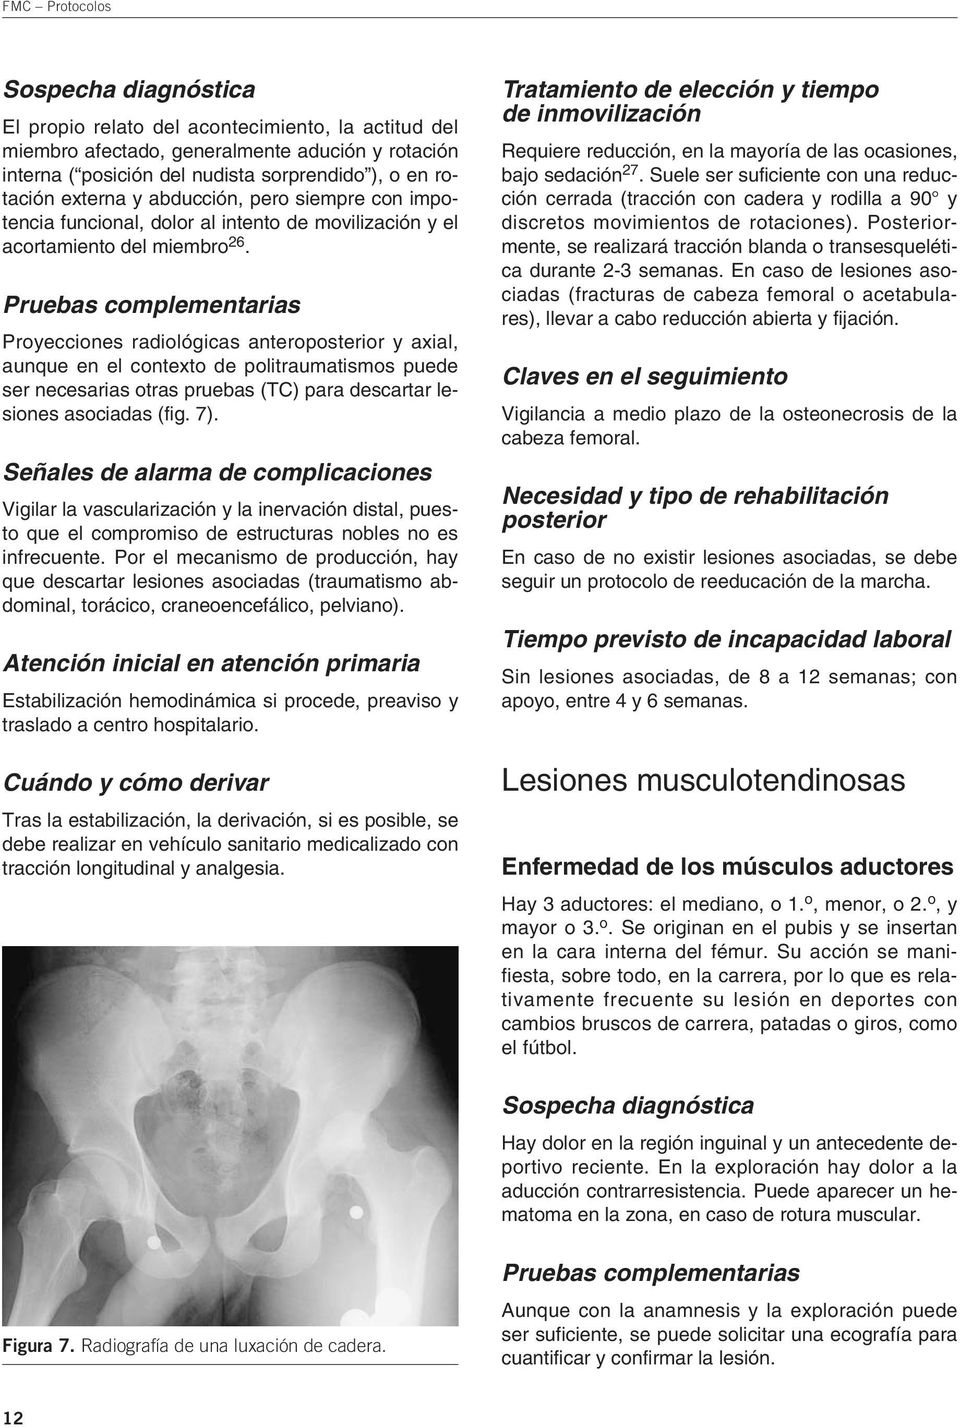 Proyecciones radiológicas antero y axial, aunque en el contexto de politraumatismos puede ser necesarias otras pruebas (TC) para descartar lesiones asociadas (fig. 7).